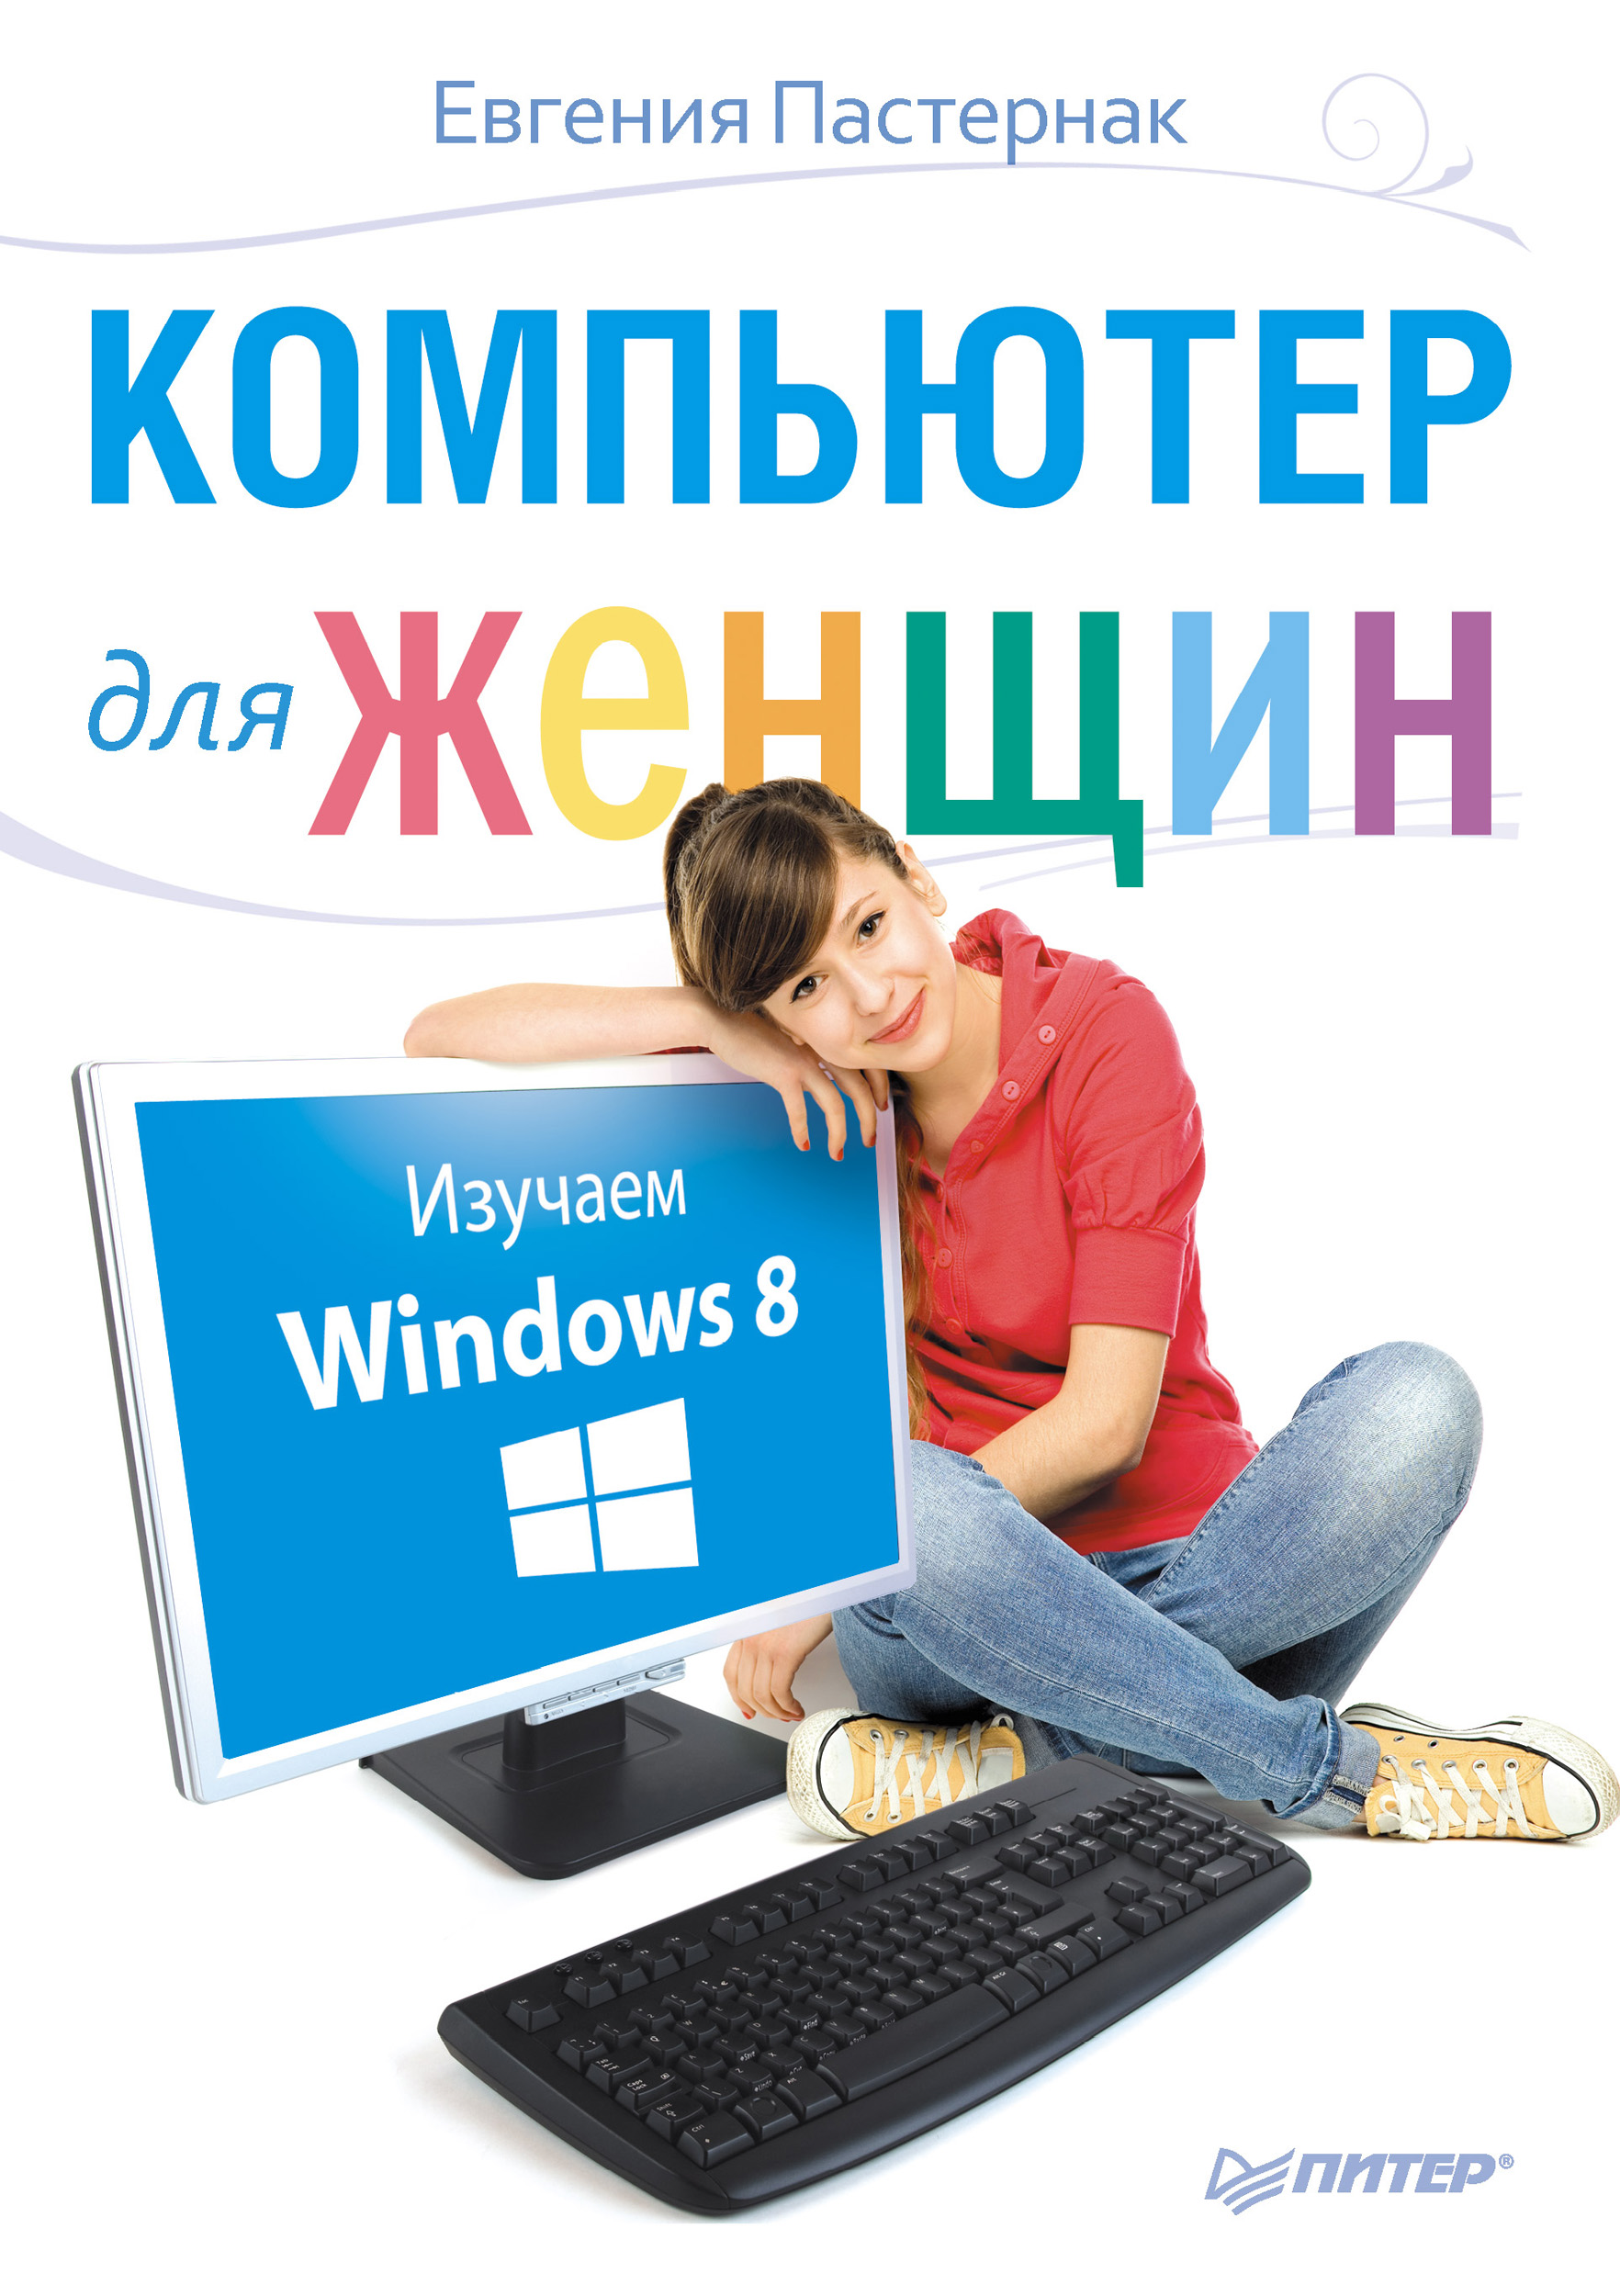 Книга  Компьютер для женщин. Изучаем Windows 8 созданная Евгения Пастернак может относится к жанру книги о компьютерах, ОС и сети. Стоимость электронной книги Компьютер для женщин. Изучаем Windows 8 с идентификатором 6060454 составляет 249.00 руб.